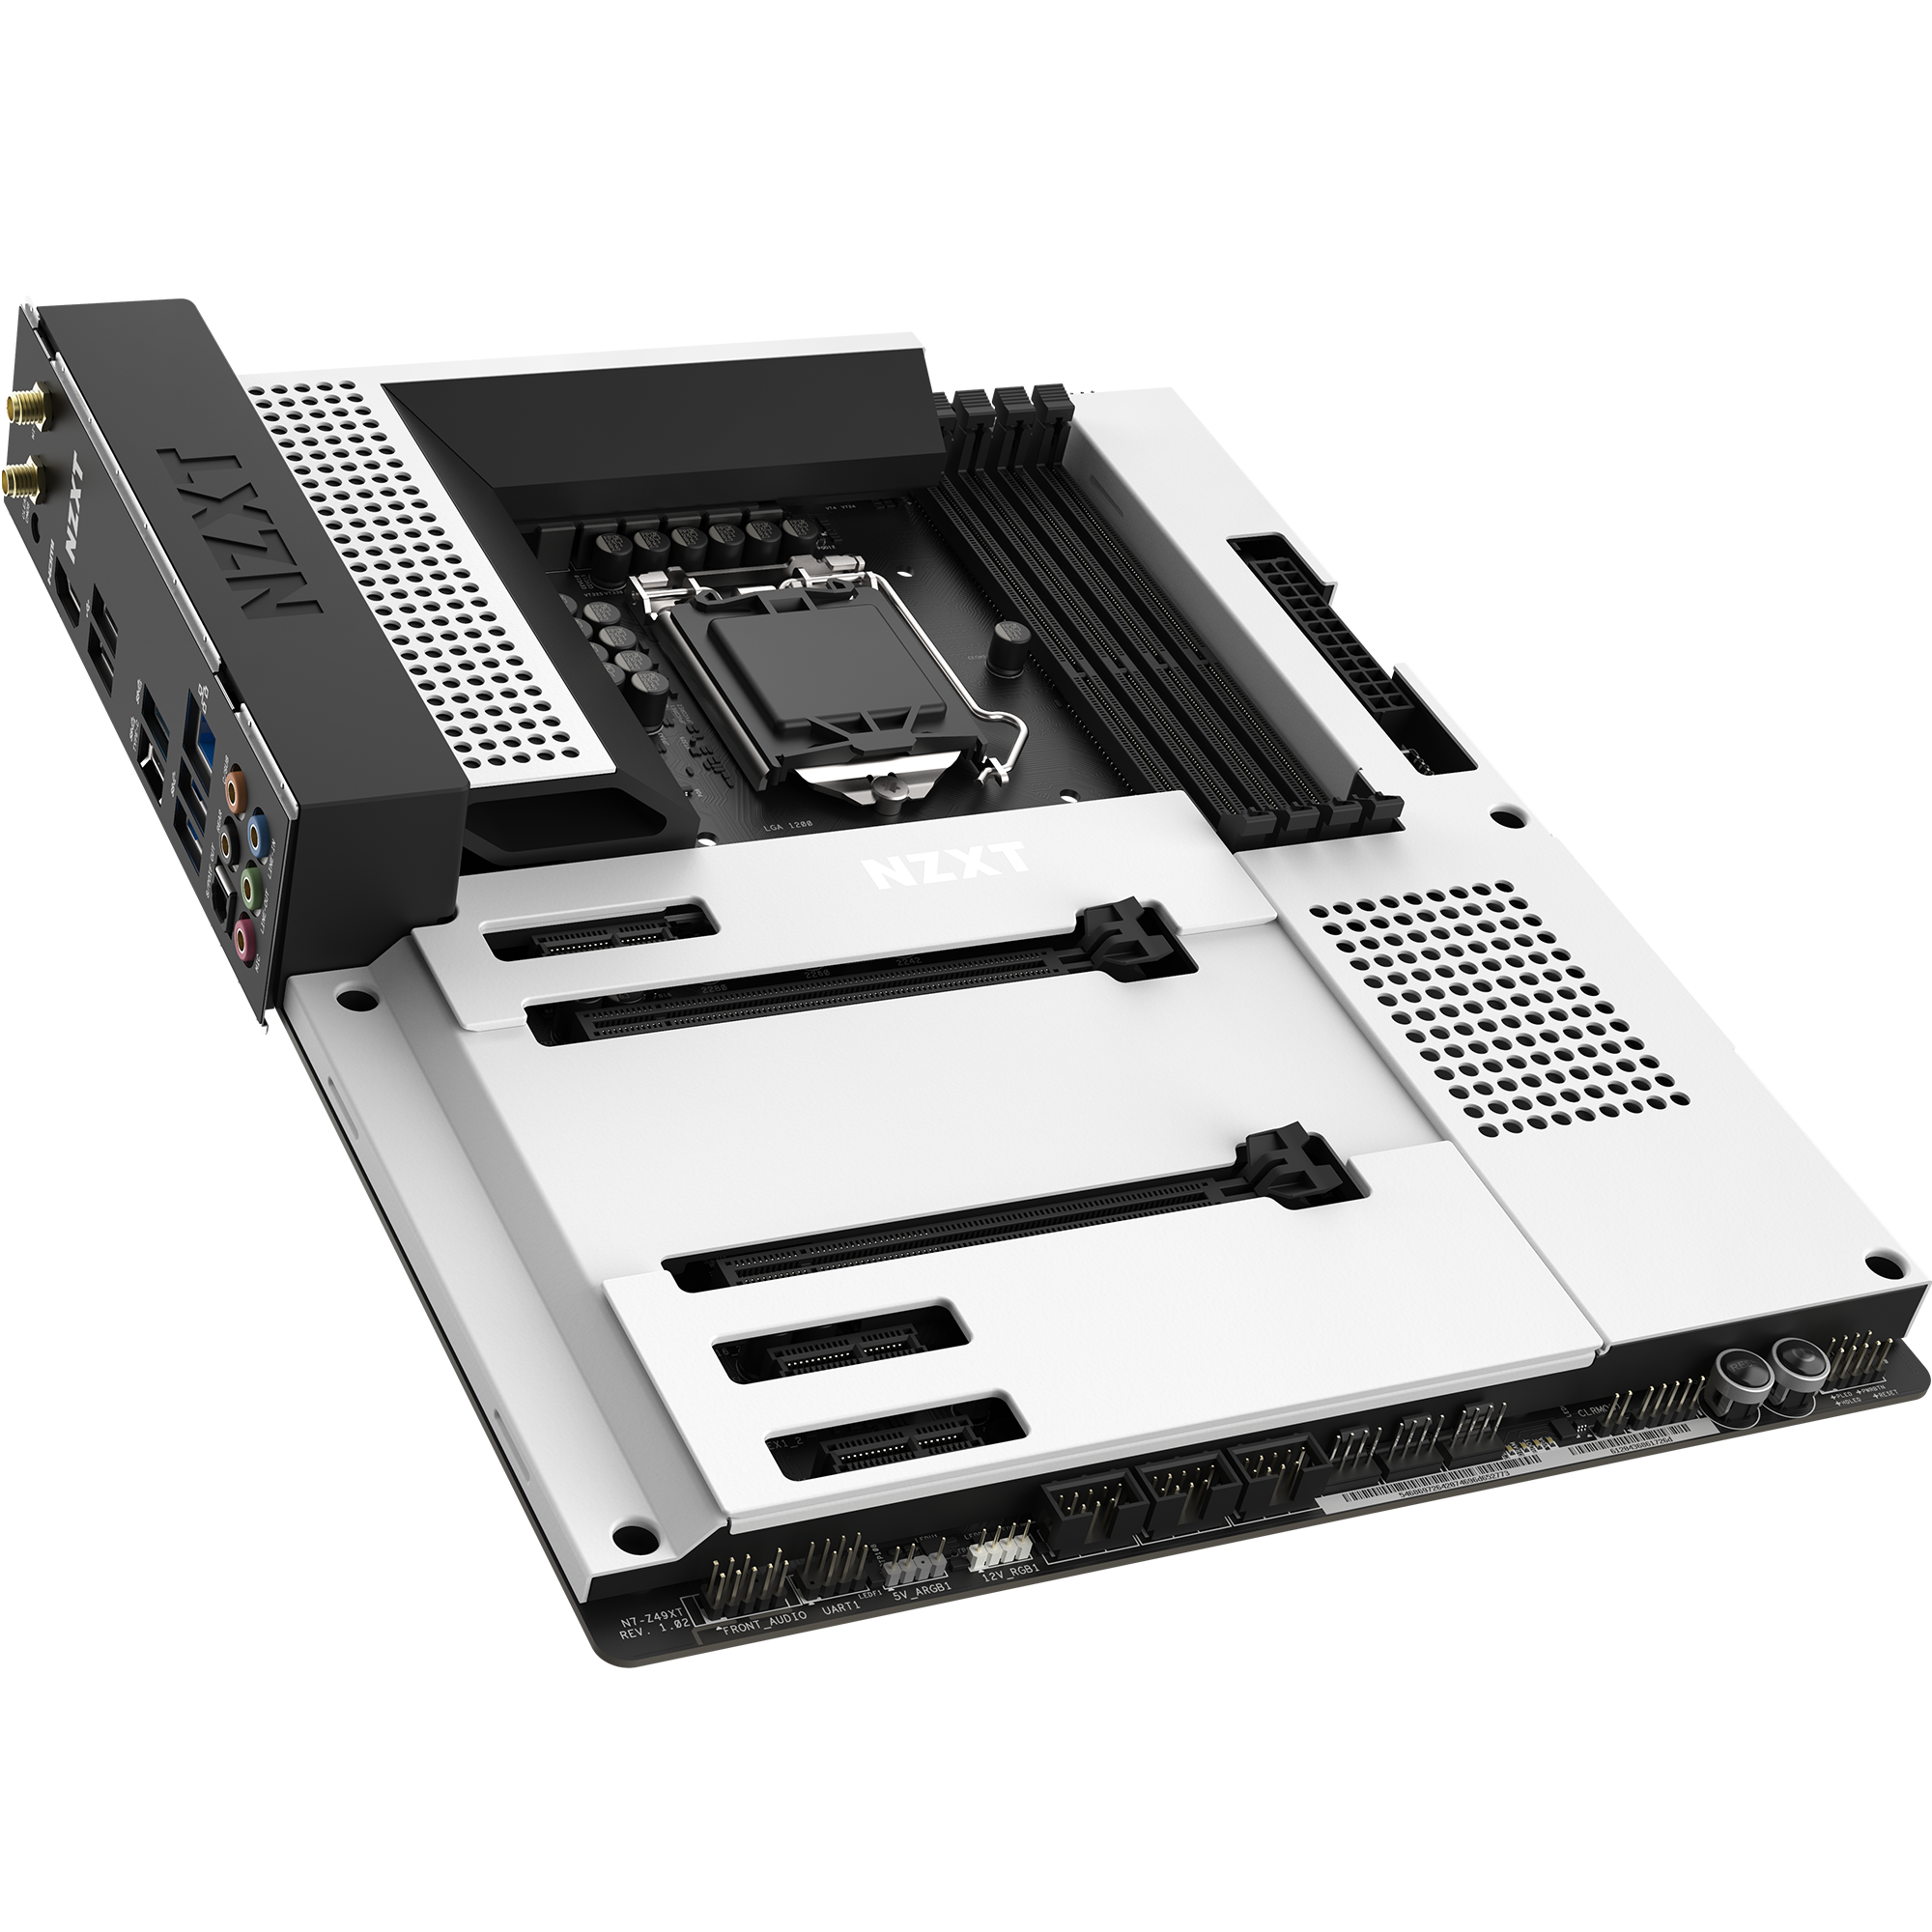 N7 Z490 | Premium Intel™ Gaming Motherboard